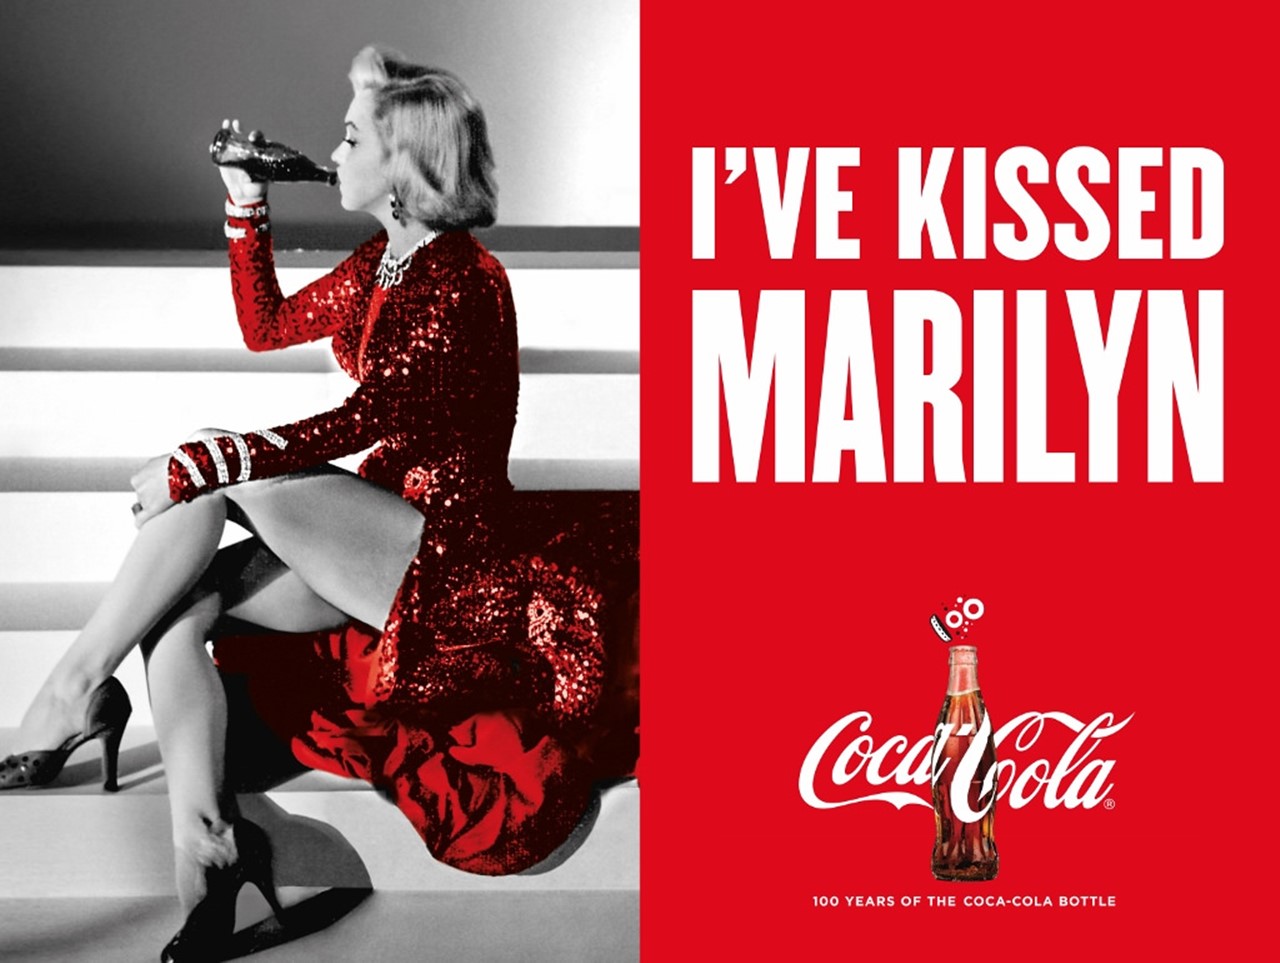 코카콜라 bottle 100주년 광고_Kissed-marilyn.jpg